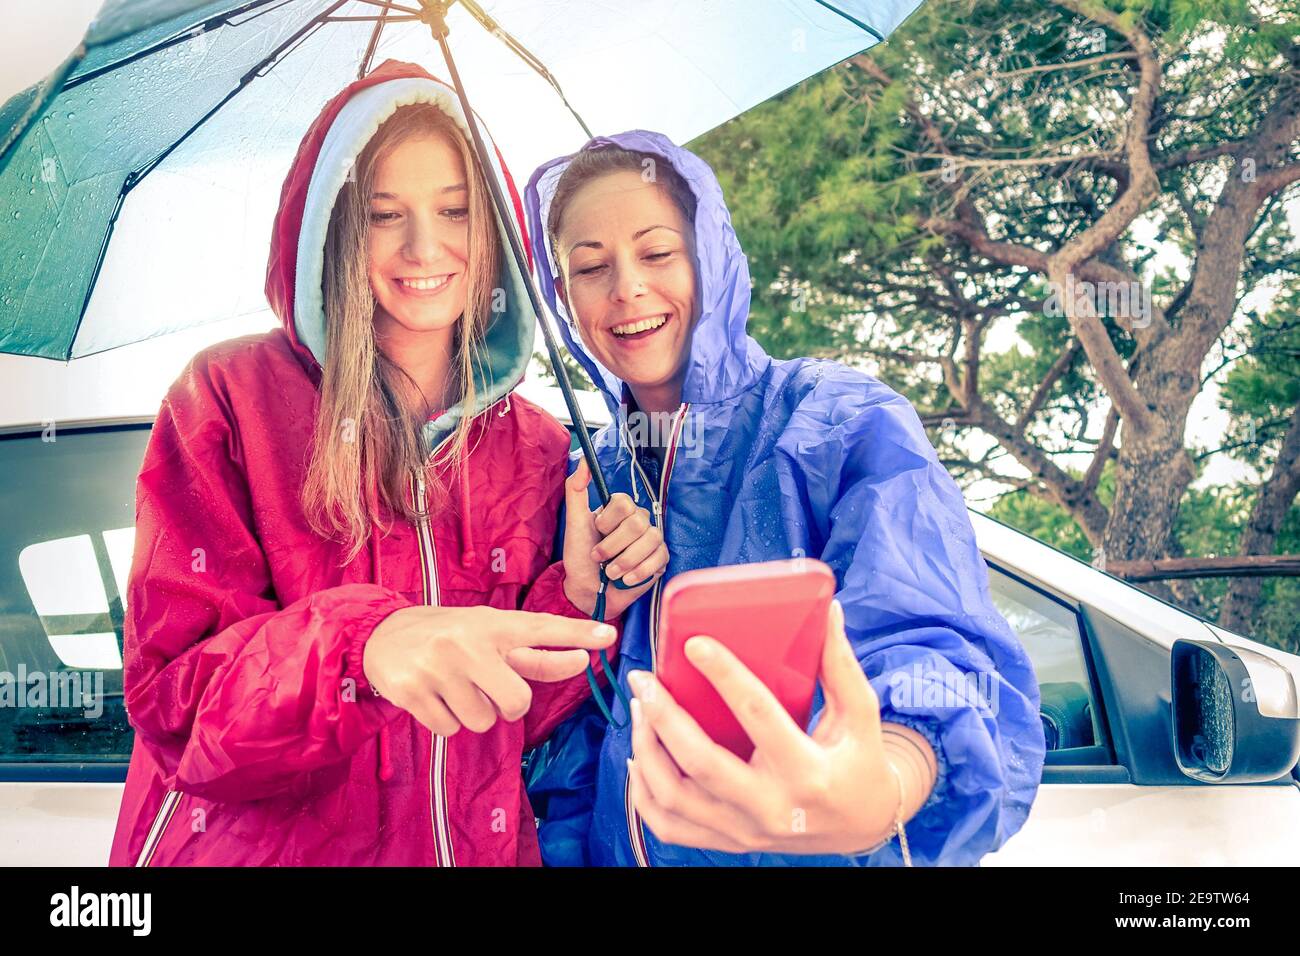 Frauen beste Freunde genießen mit Smartphone mit Sonne kommt heraus Nach dem Regen - Autotour mit jungen Freundinnen Spaß zusammen - Vintage Filter Stockfoto